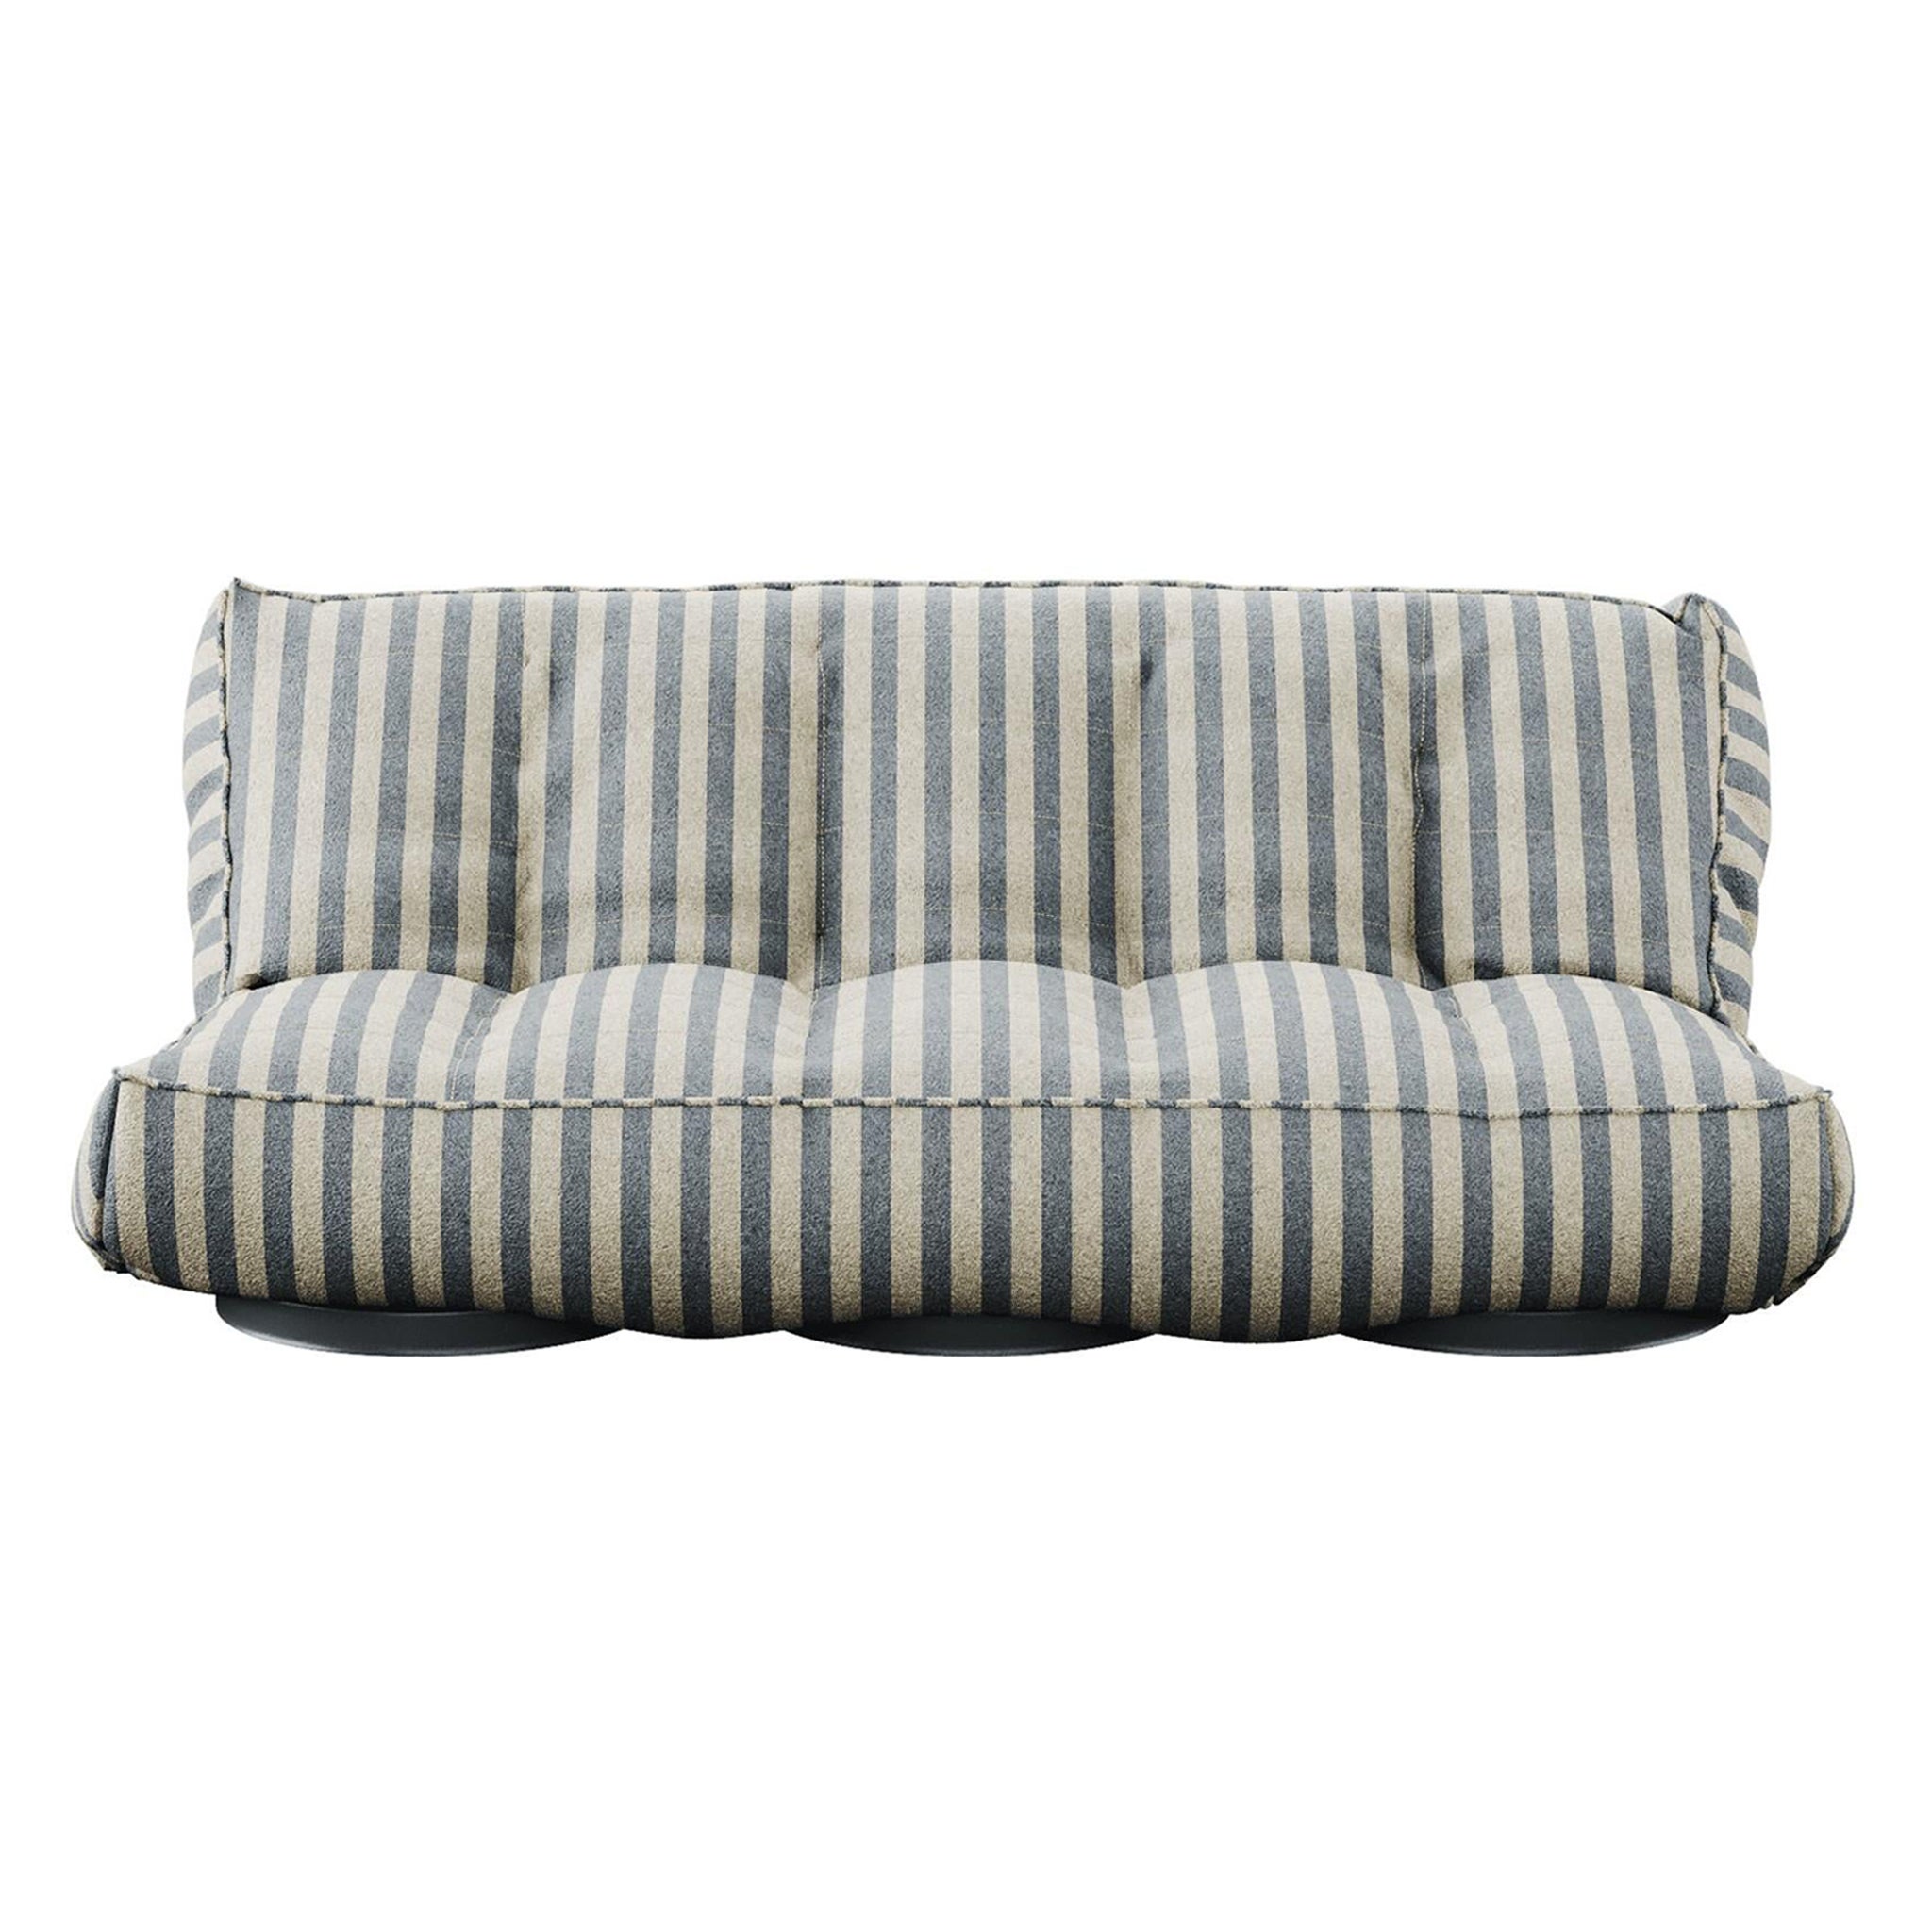 Sofá moderno de exterior plegable Daybed tapizado en tela de rayas azules para exteriores